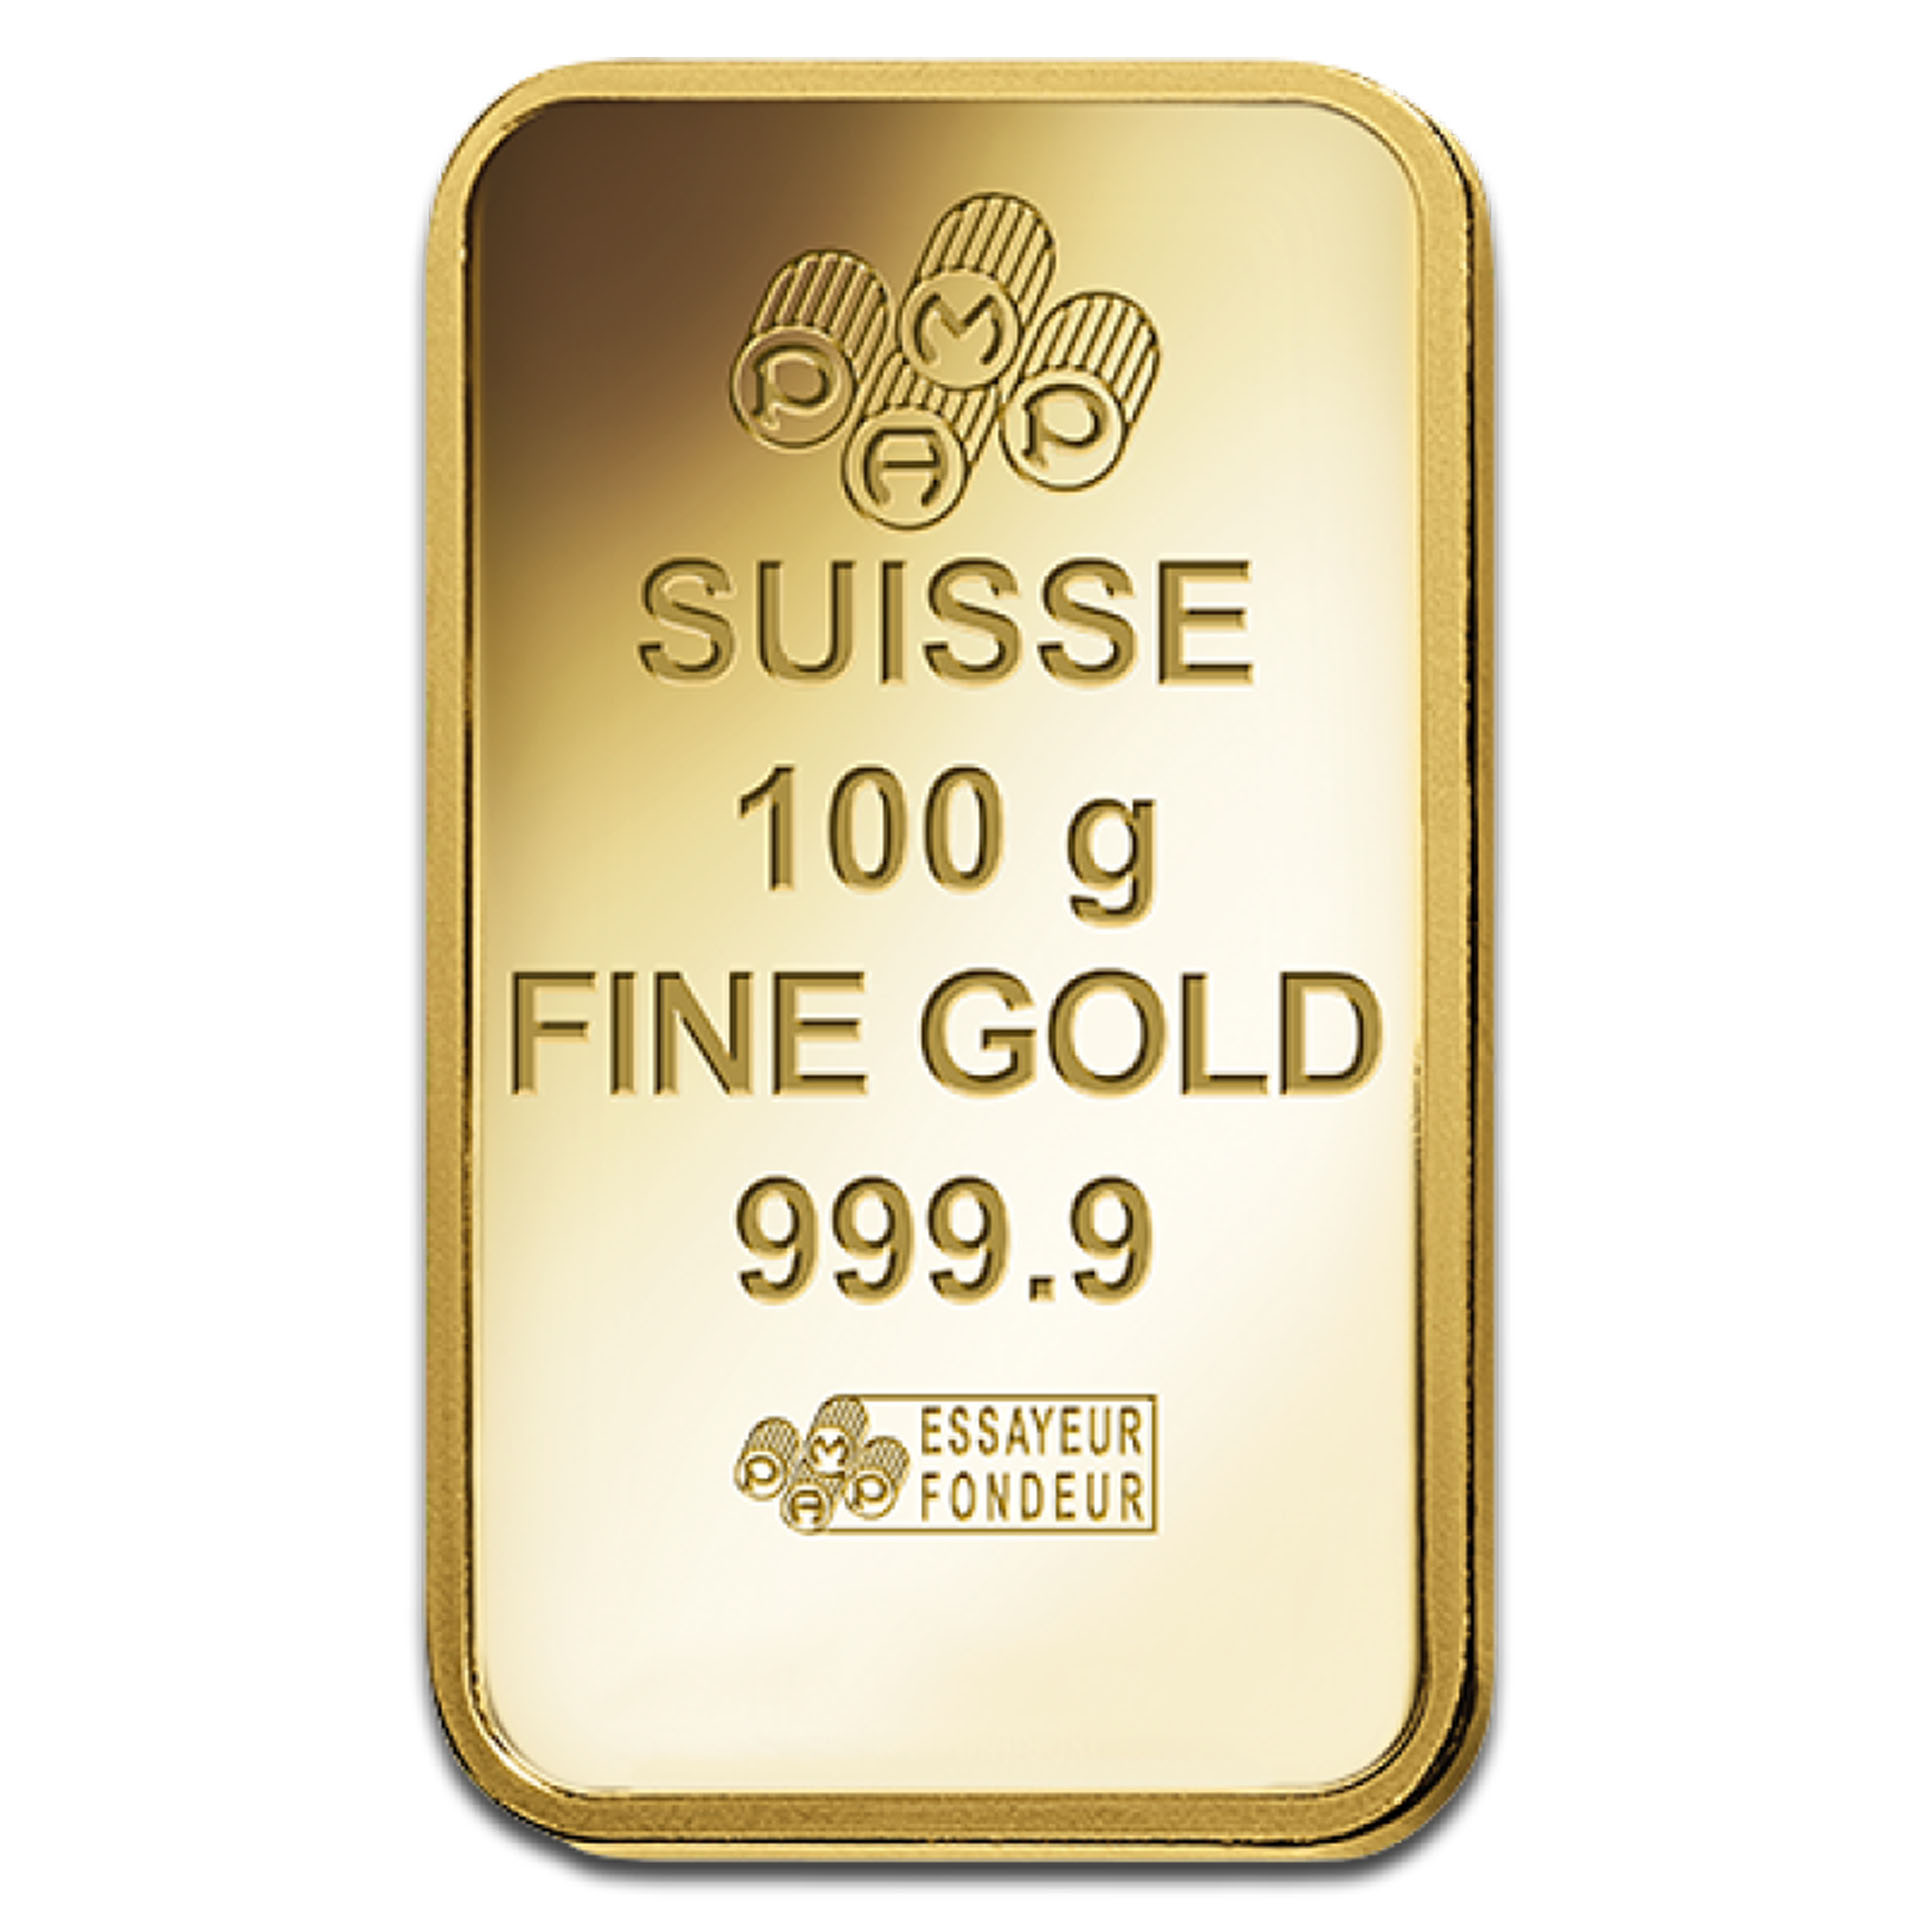 Цена грамма золота на сегодняшний день. Suisse 10g Fine Silver 999.9 белое золото. Suisse 10g Fine Gold 999.9 кулон. Слиток золота 999. 999.9 Fine Gold кулон серебро.